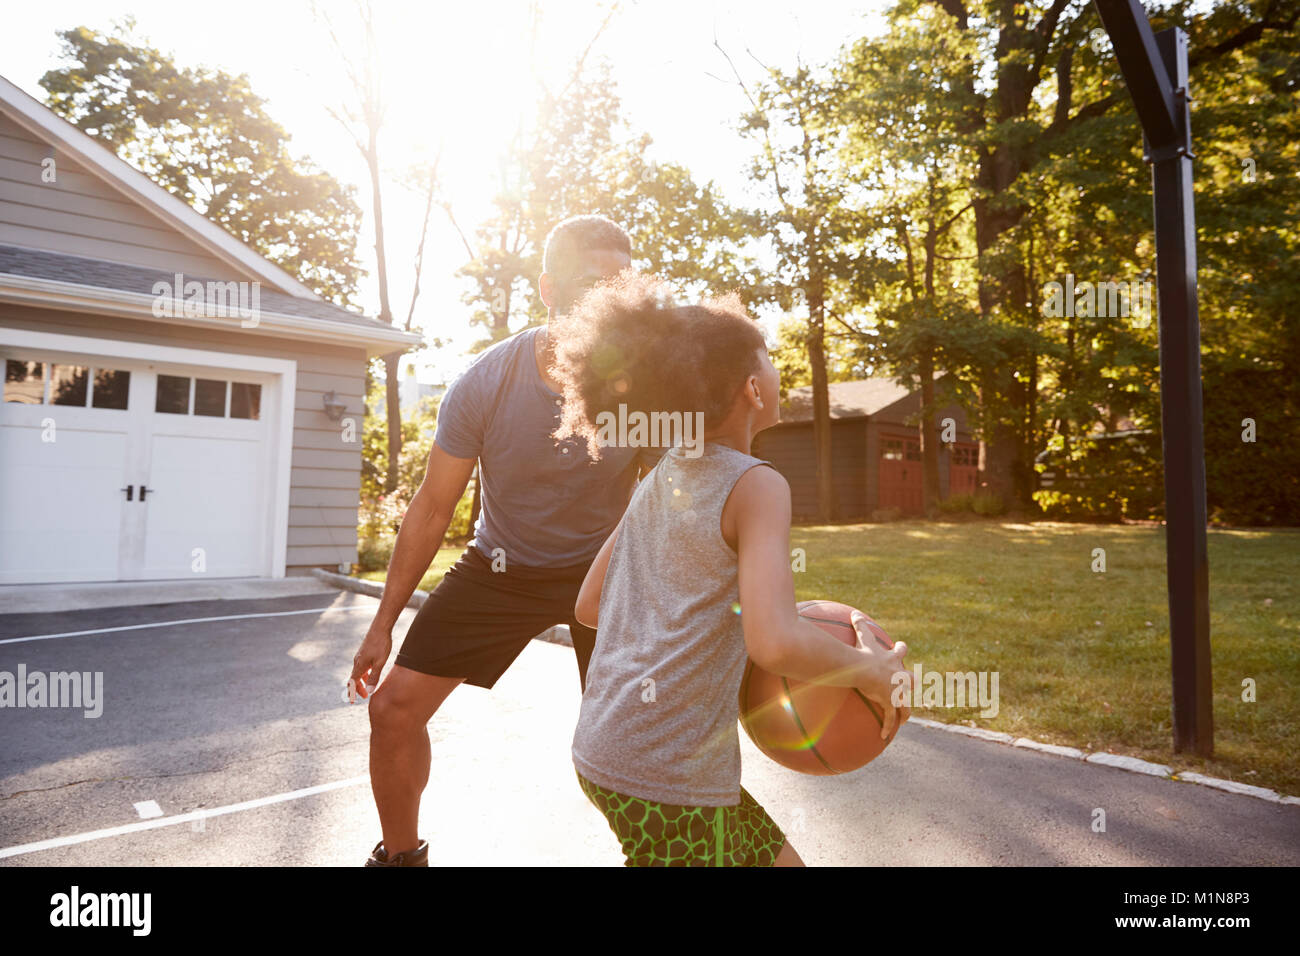 Vater und Sohn Basketball spielen in der Einfahrt zu Hause Stockfoto